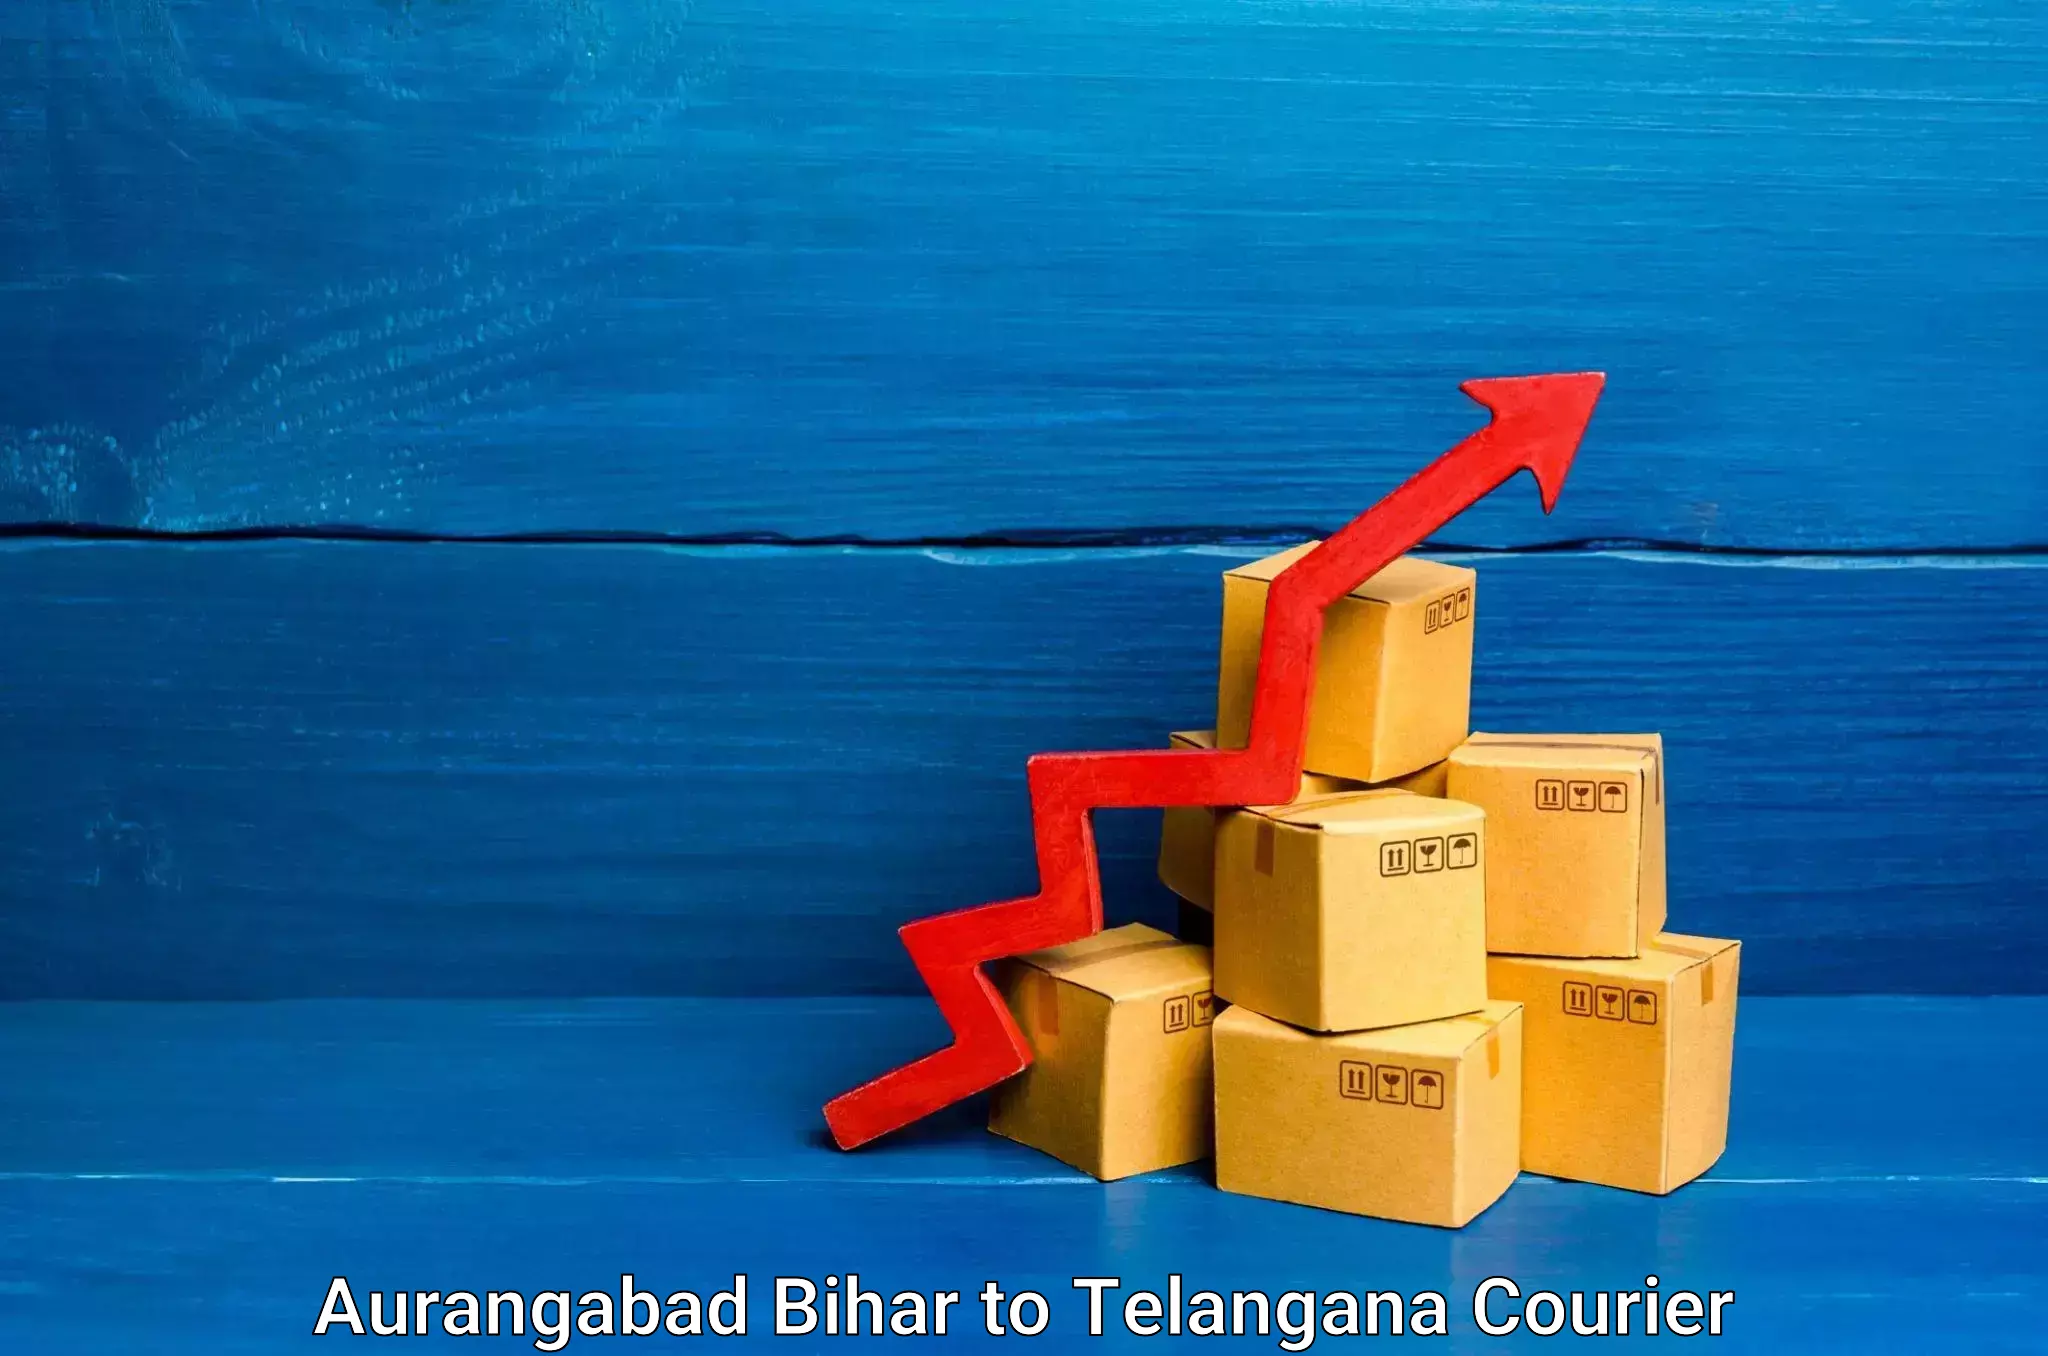 Personalized moving service Aurangabad Bihar to Telangana